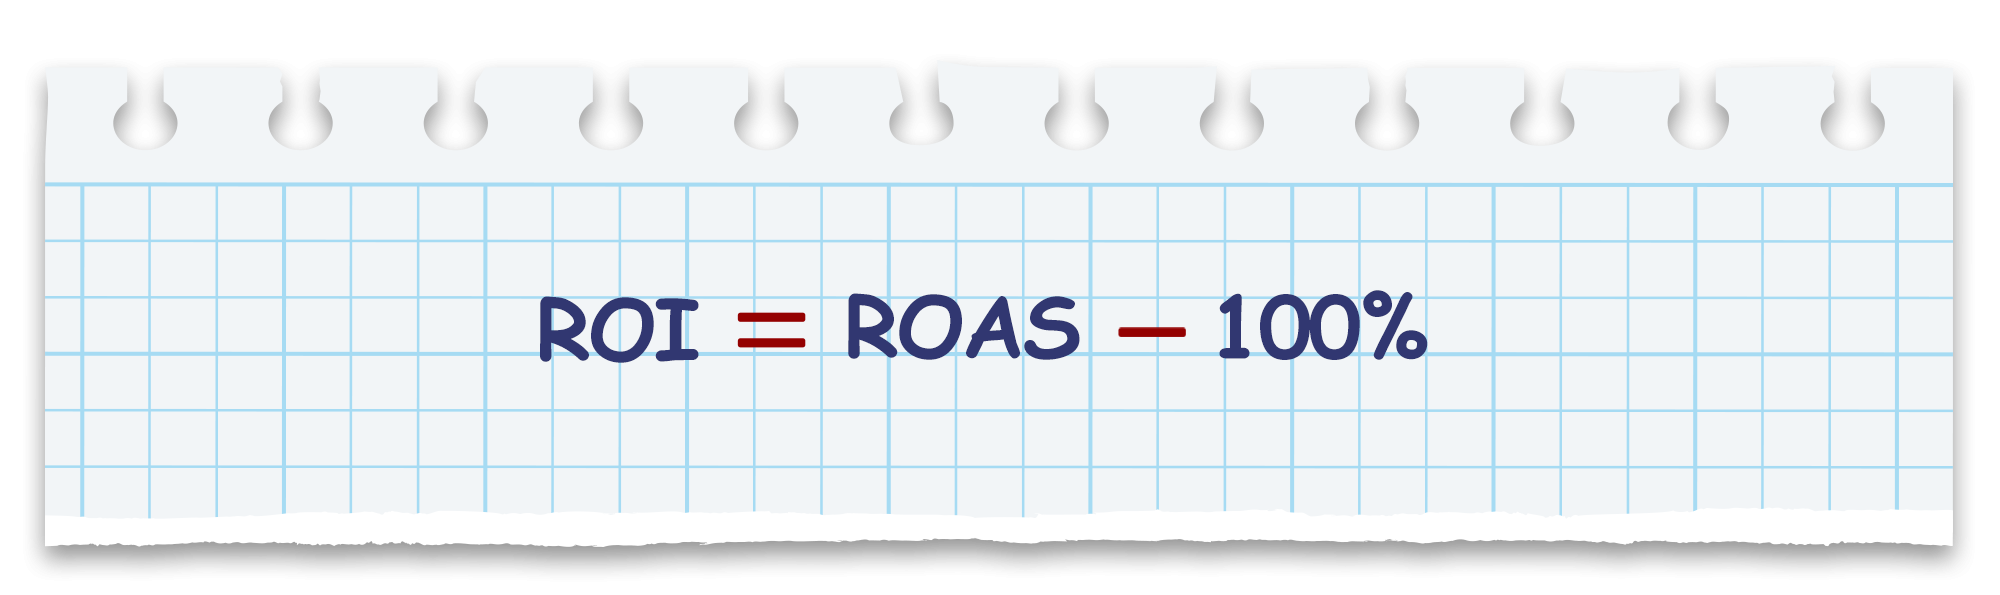 ارتباط ROI و ROAS